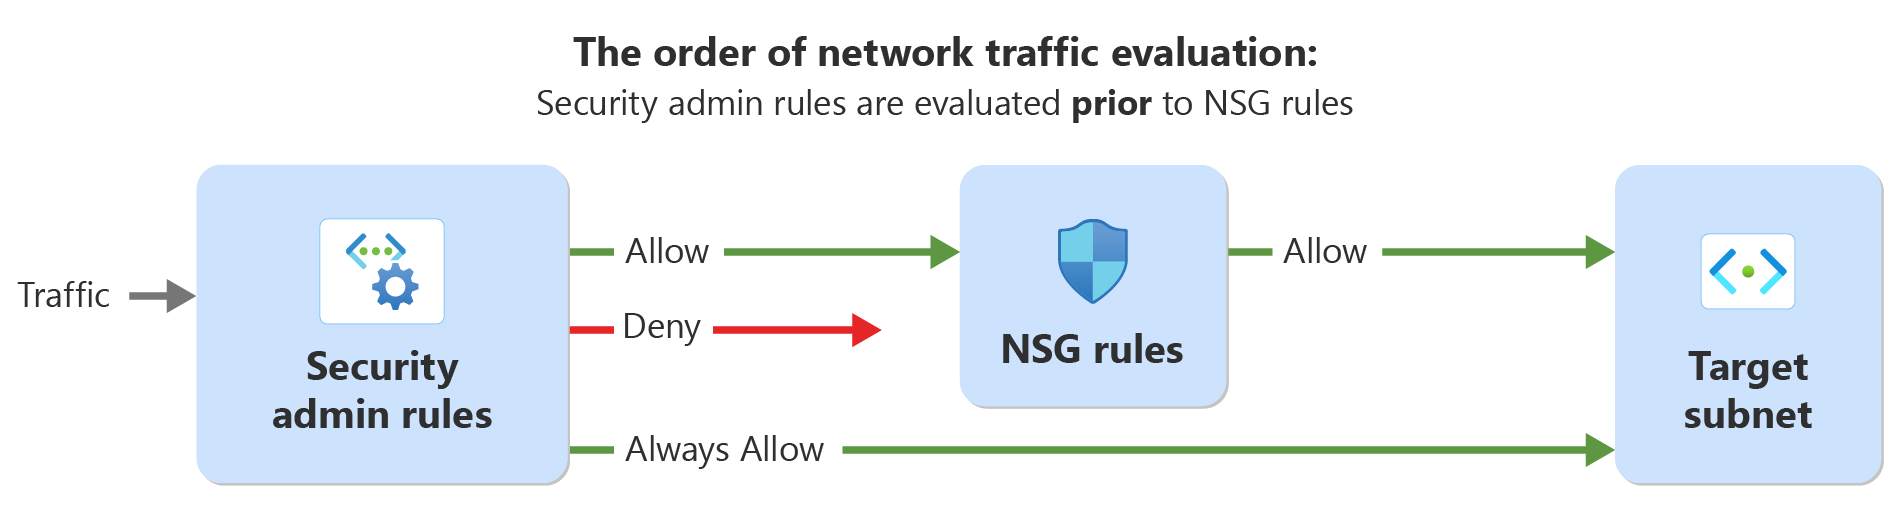 セキュリティ管理者ルールとネットワーク セキュリティ ルールを使ったネットワーク トラフィックの評価順序を示す図。